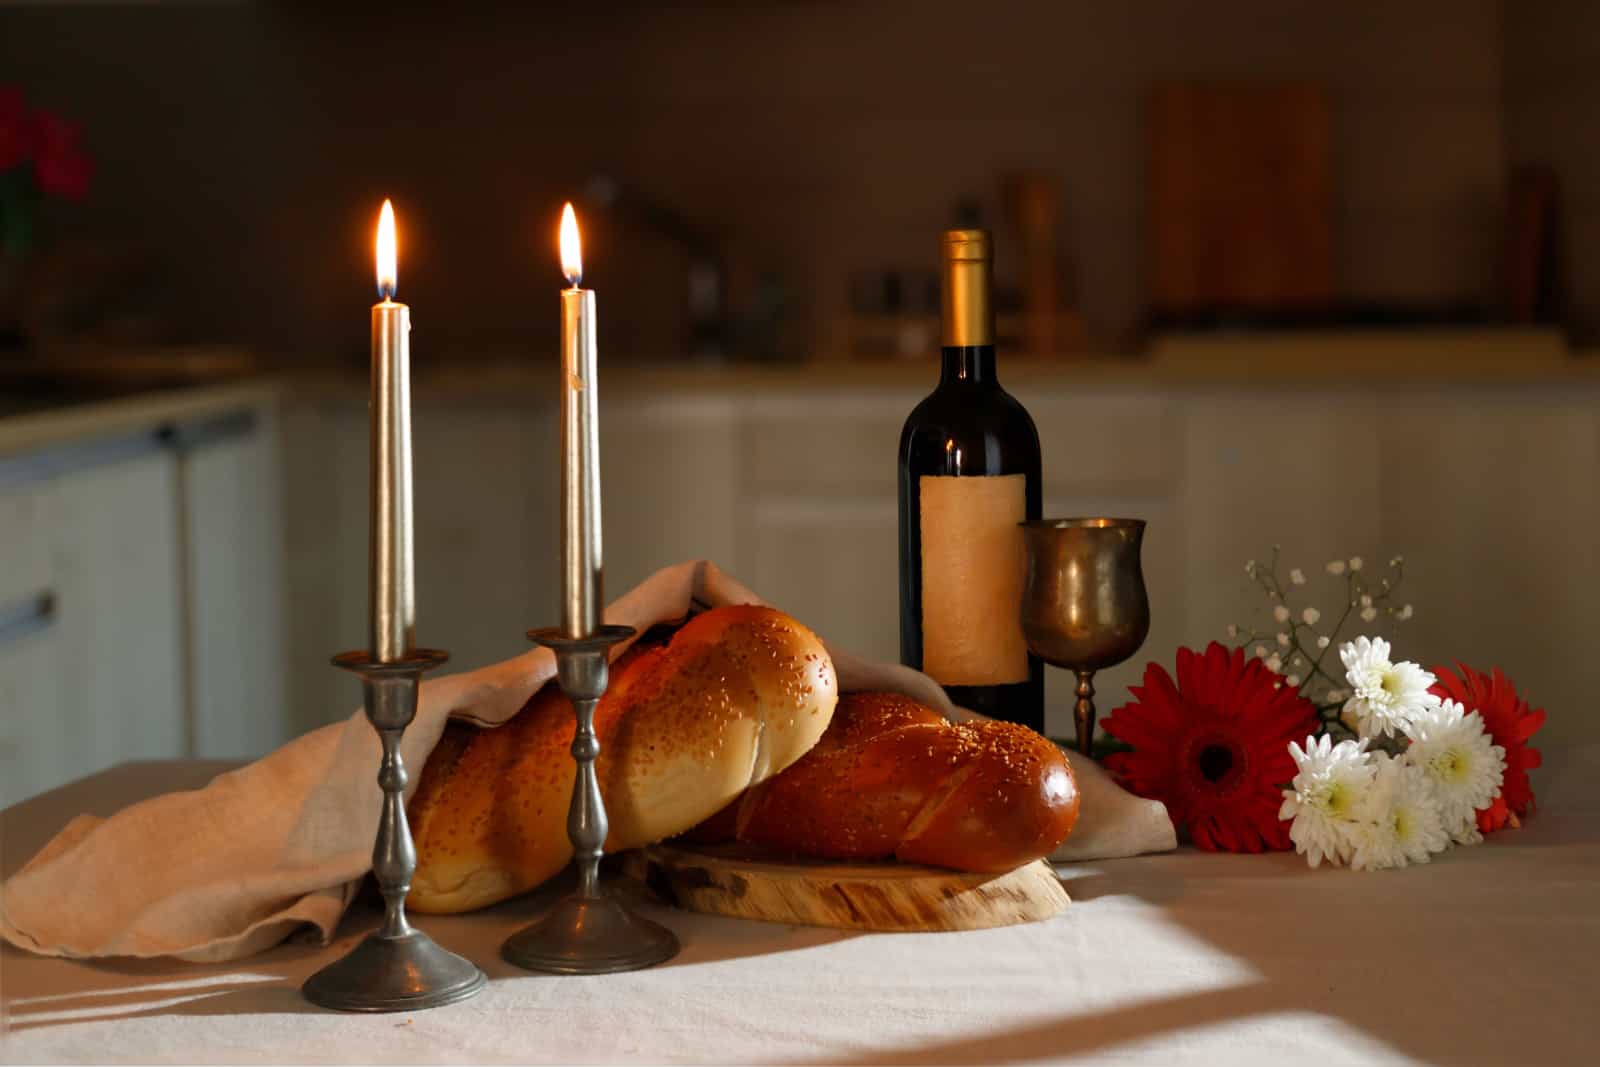 Pan de Challah cubierto con una servilleta especial, vino de Shabat en la mesa de la cocina. Ritual tradicional judío del Shabat.